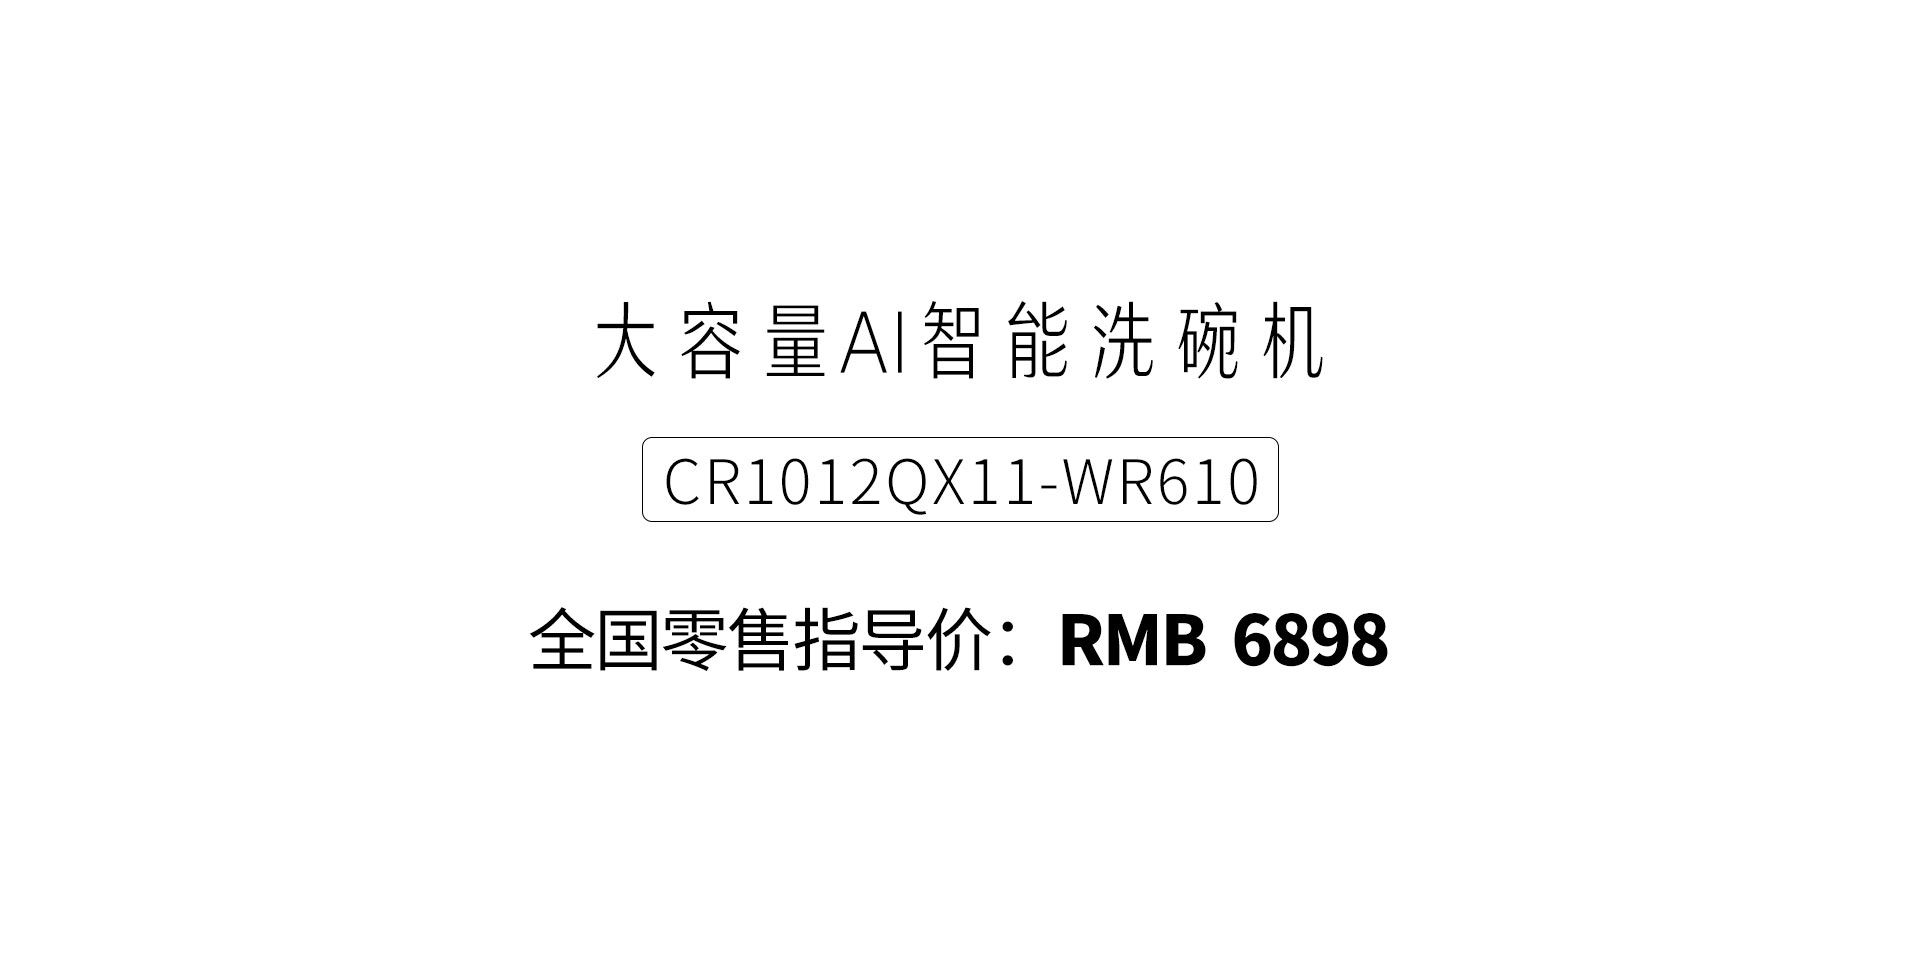 cr1012qx11-wr610.jpg